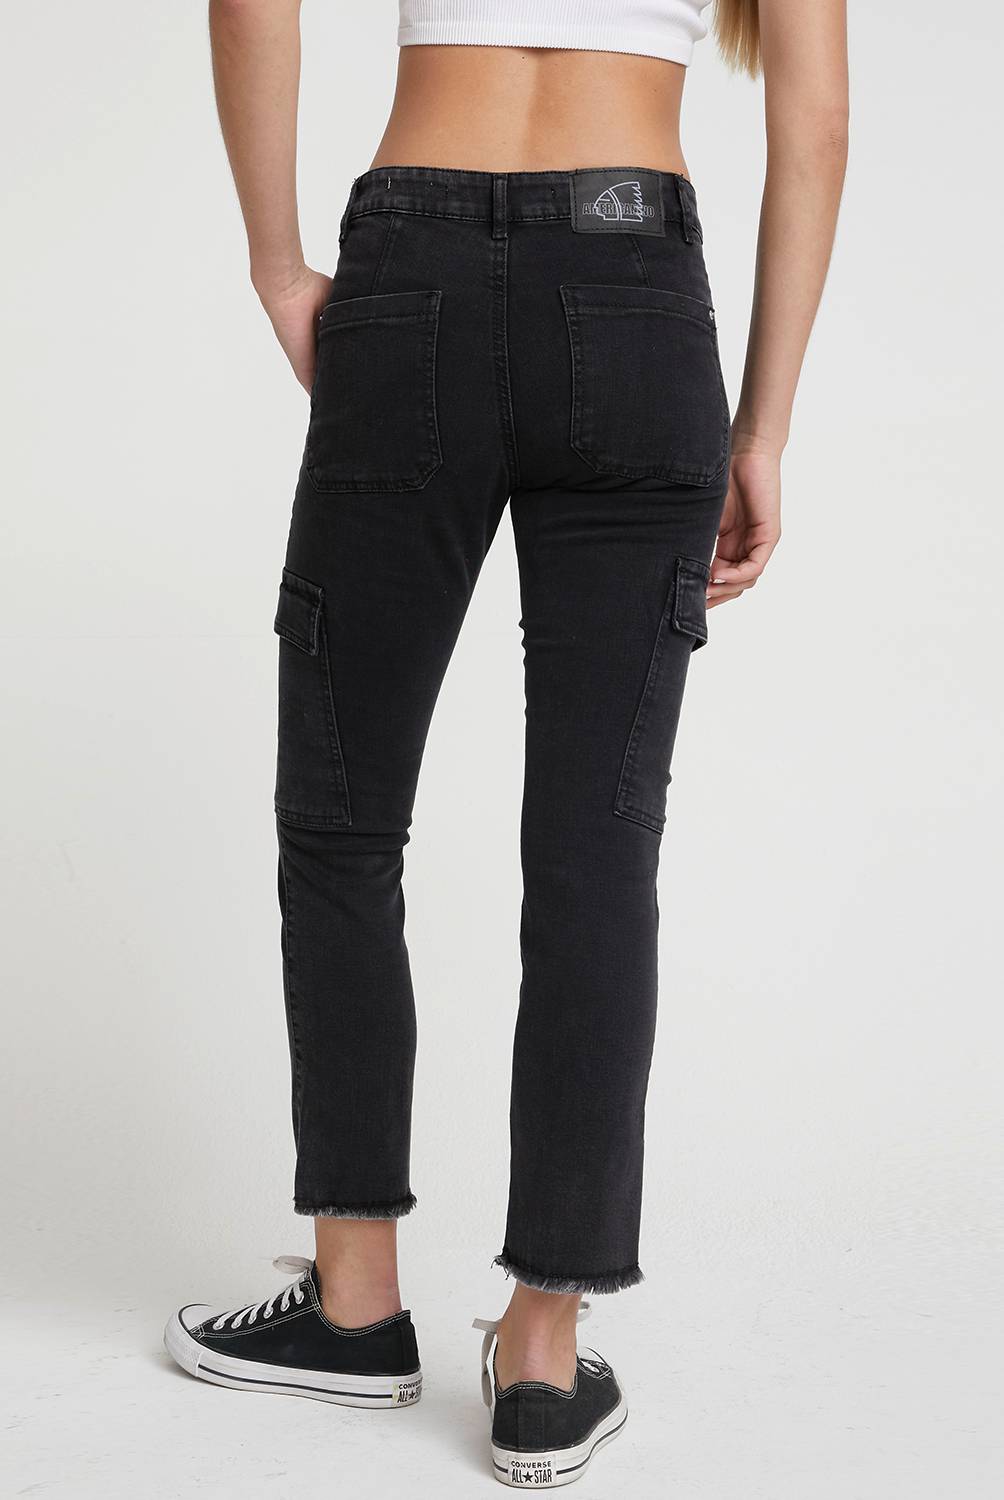 AMERICANINO - Americanino Jeans Cargo Tiro Medio Mujer